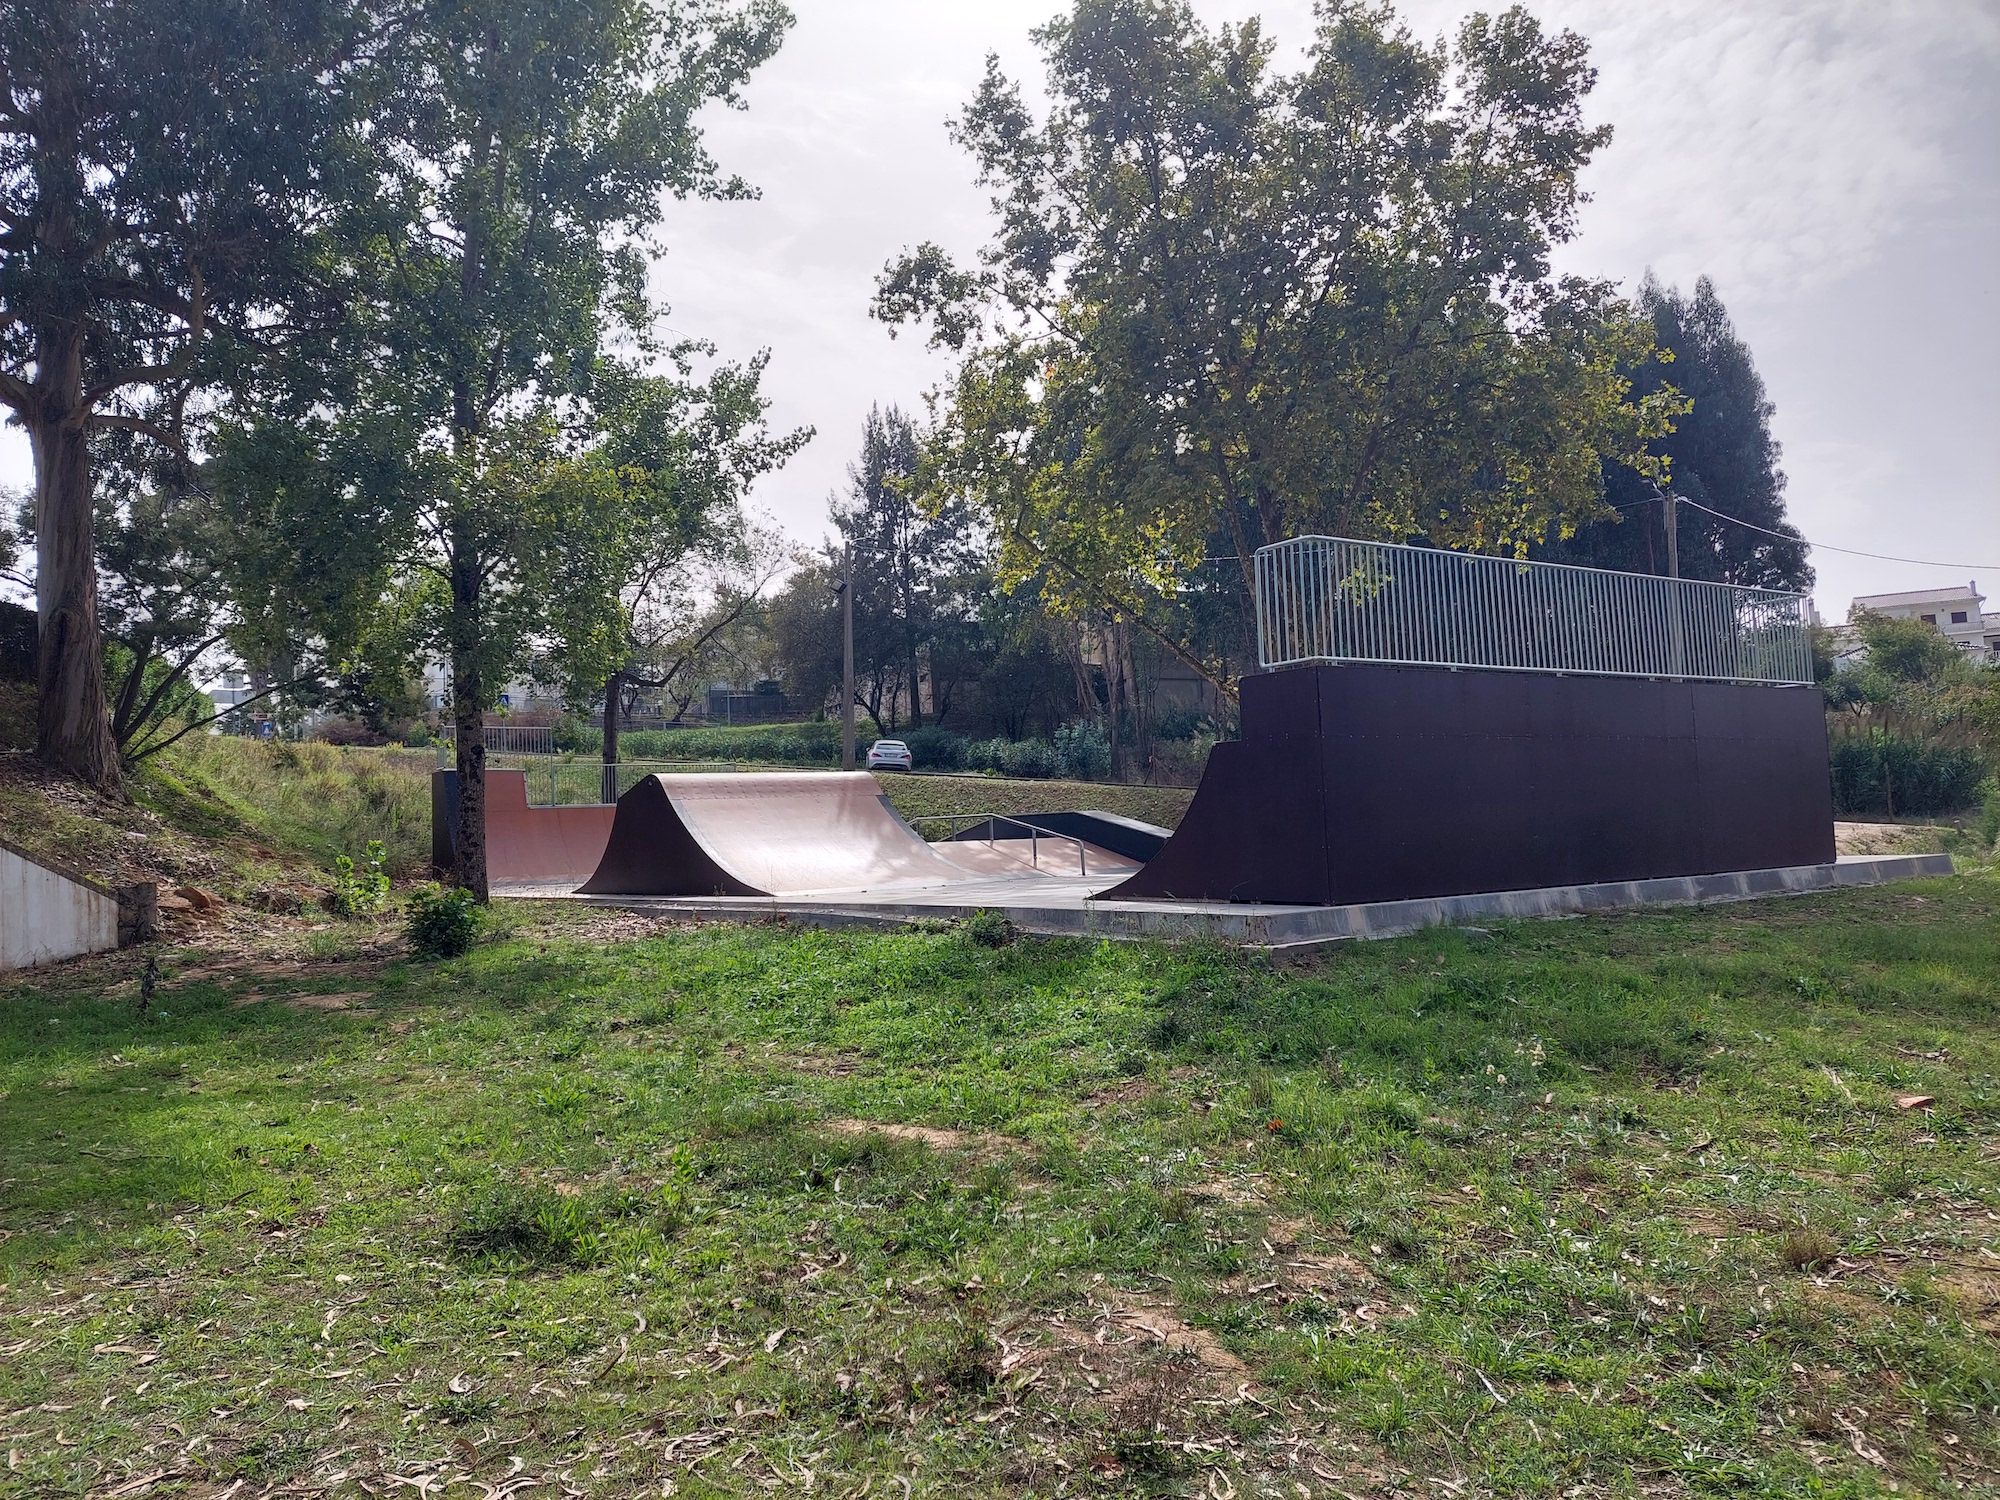 Sobral de Monte Agraço skatepark